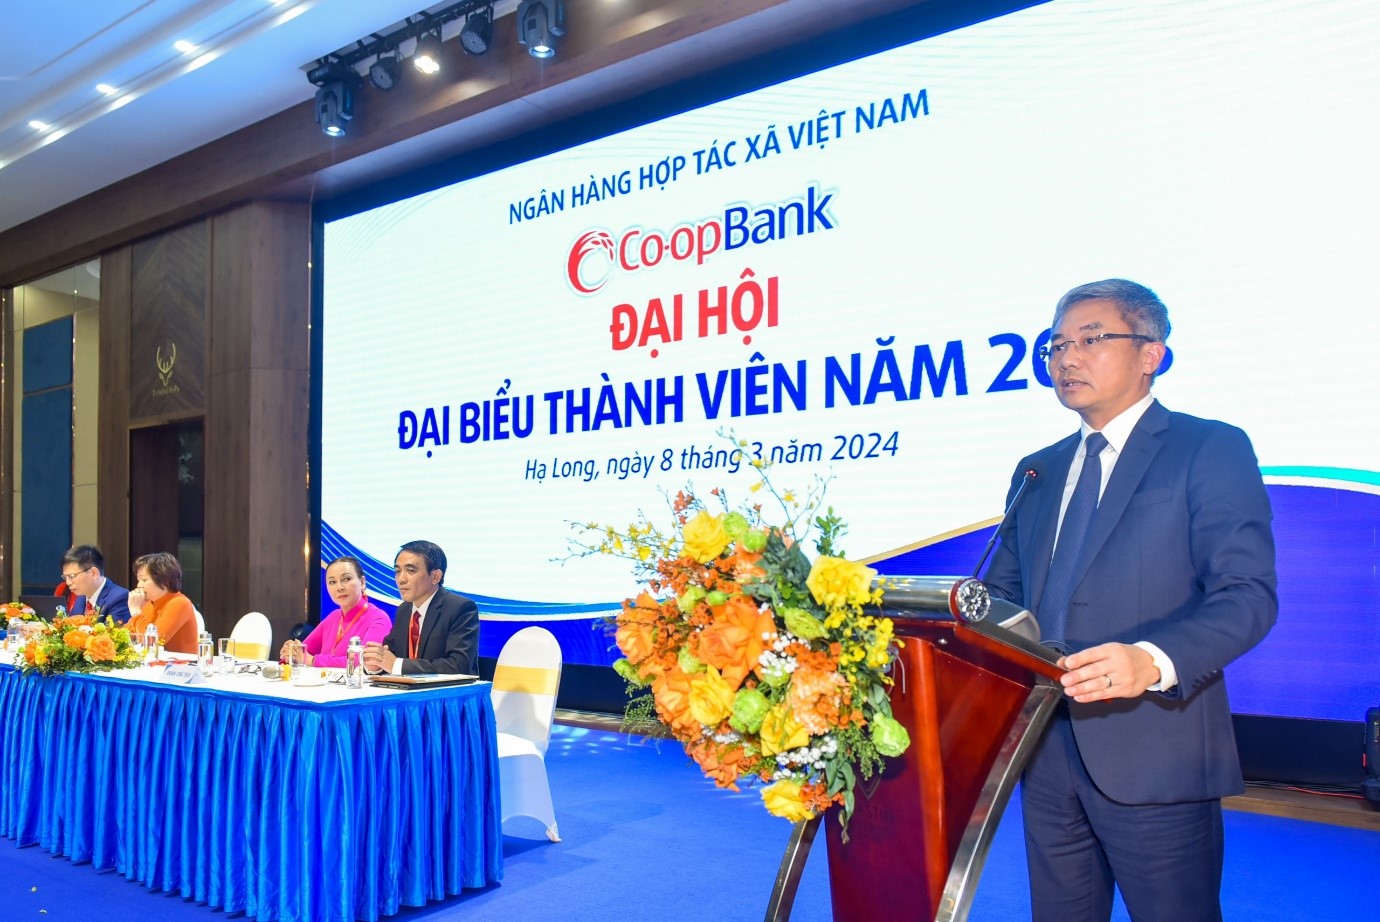 Ông Nguyễn Quốc Cường - Chủ tịch Hội đồng quản trị Co-opBank phát biểu tại Hội nghị